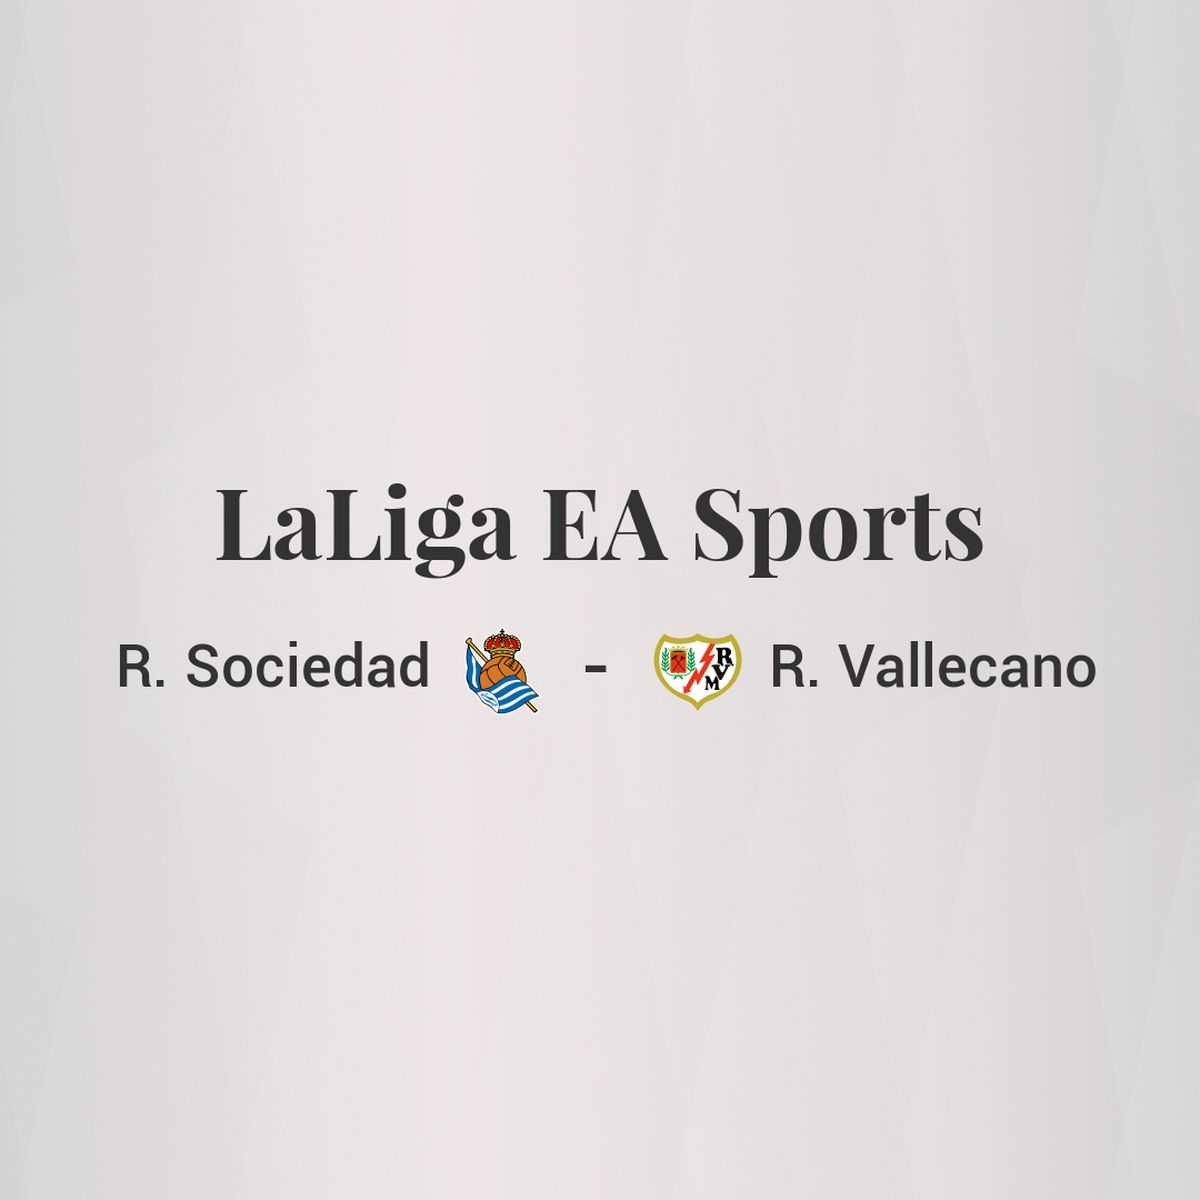 Puntuaciones Real Sociedad – Rayo Vallecano. Puntuación Rayo Vallecano